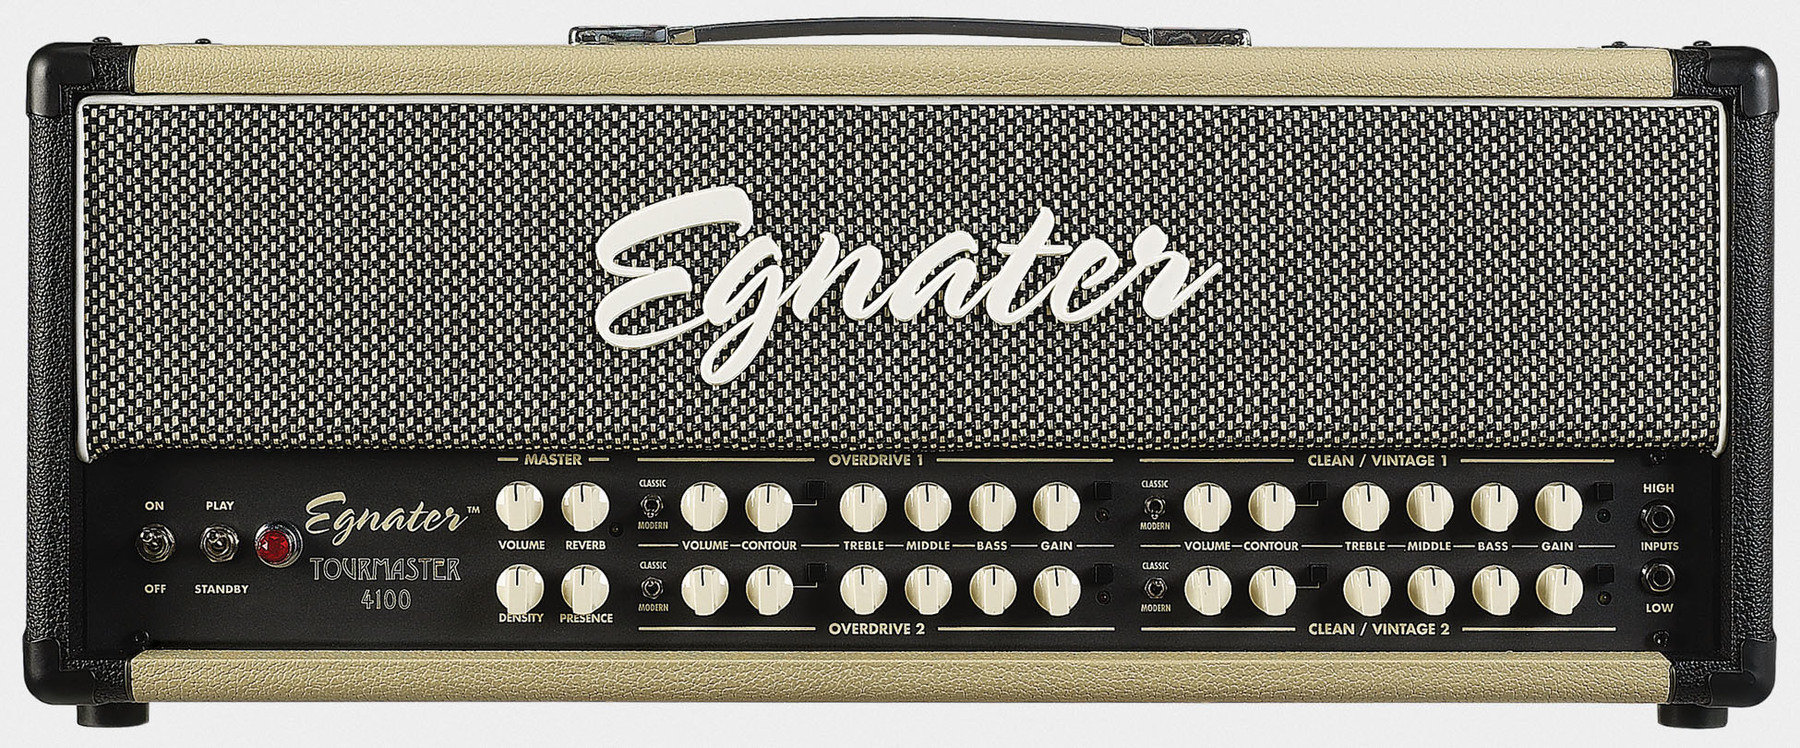 Tube Amplifier Egnater Tourmaster 4100